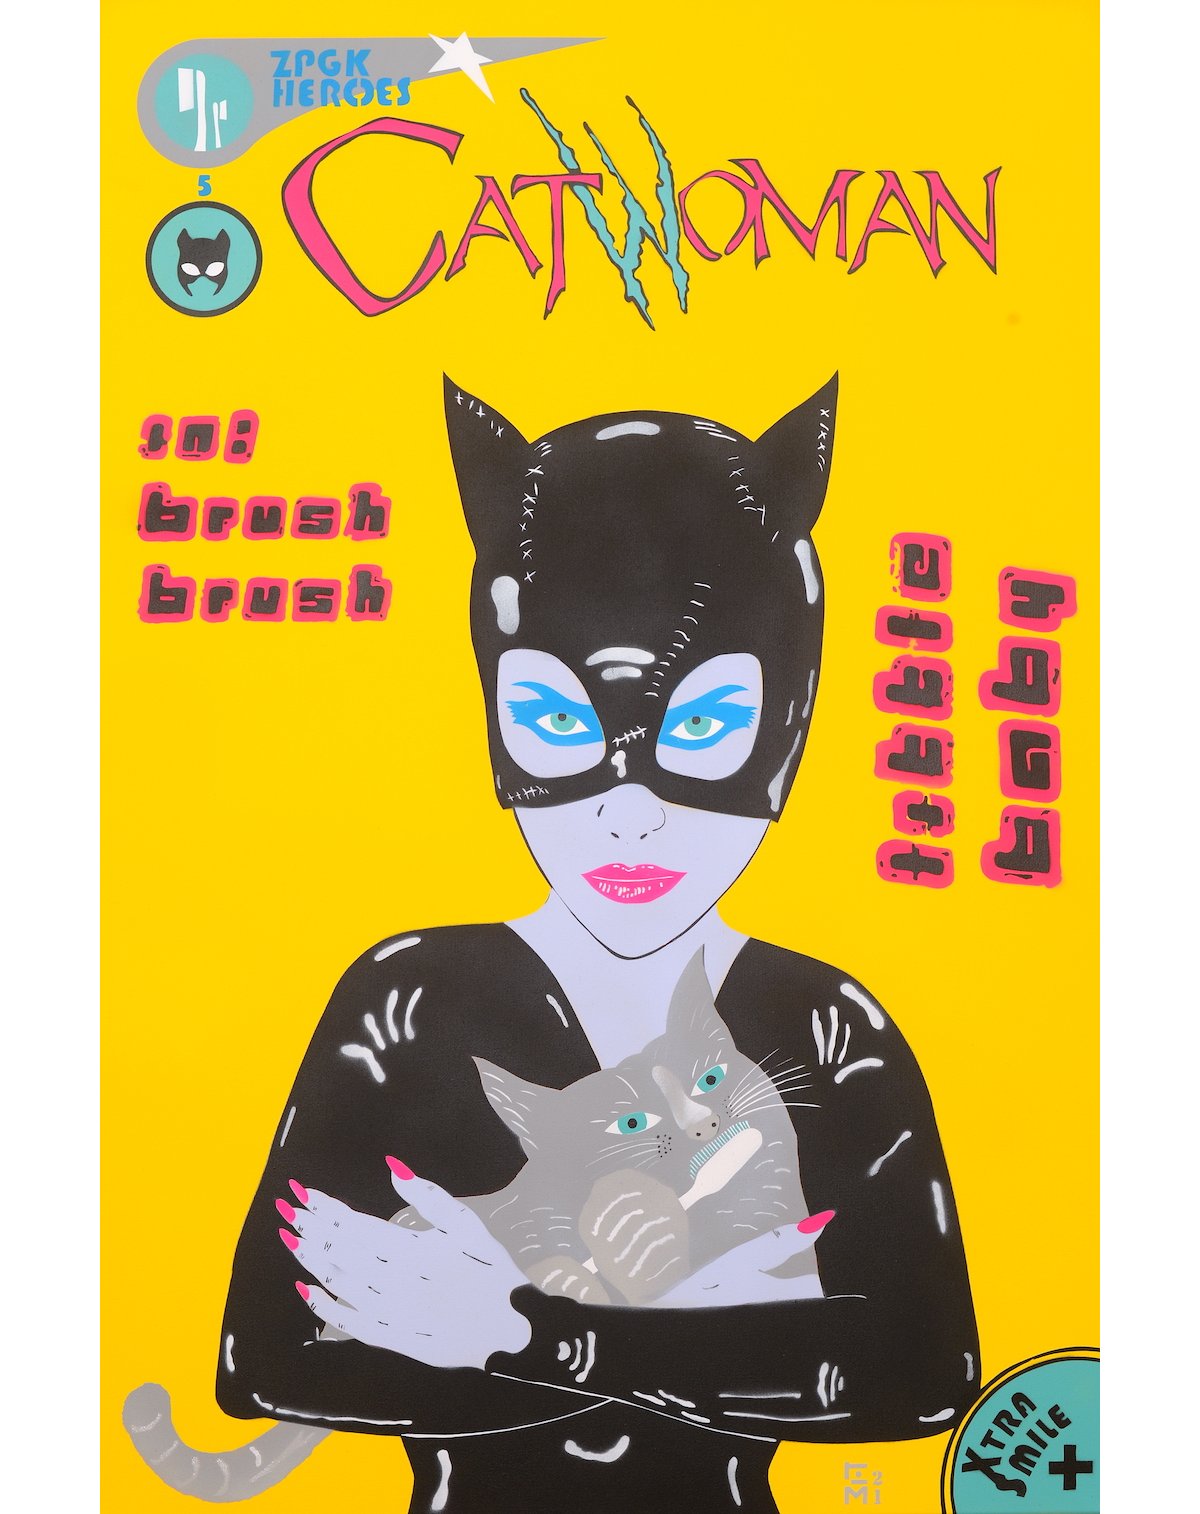 catwoman-micart63-zpgk-popstreet-popstreetshop-commissionwork